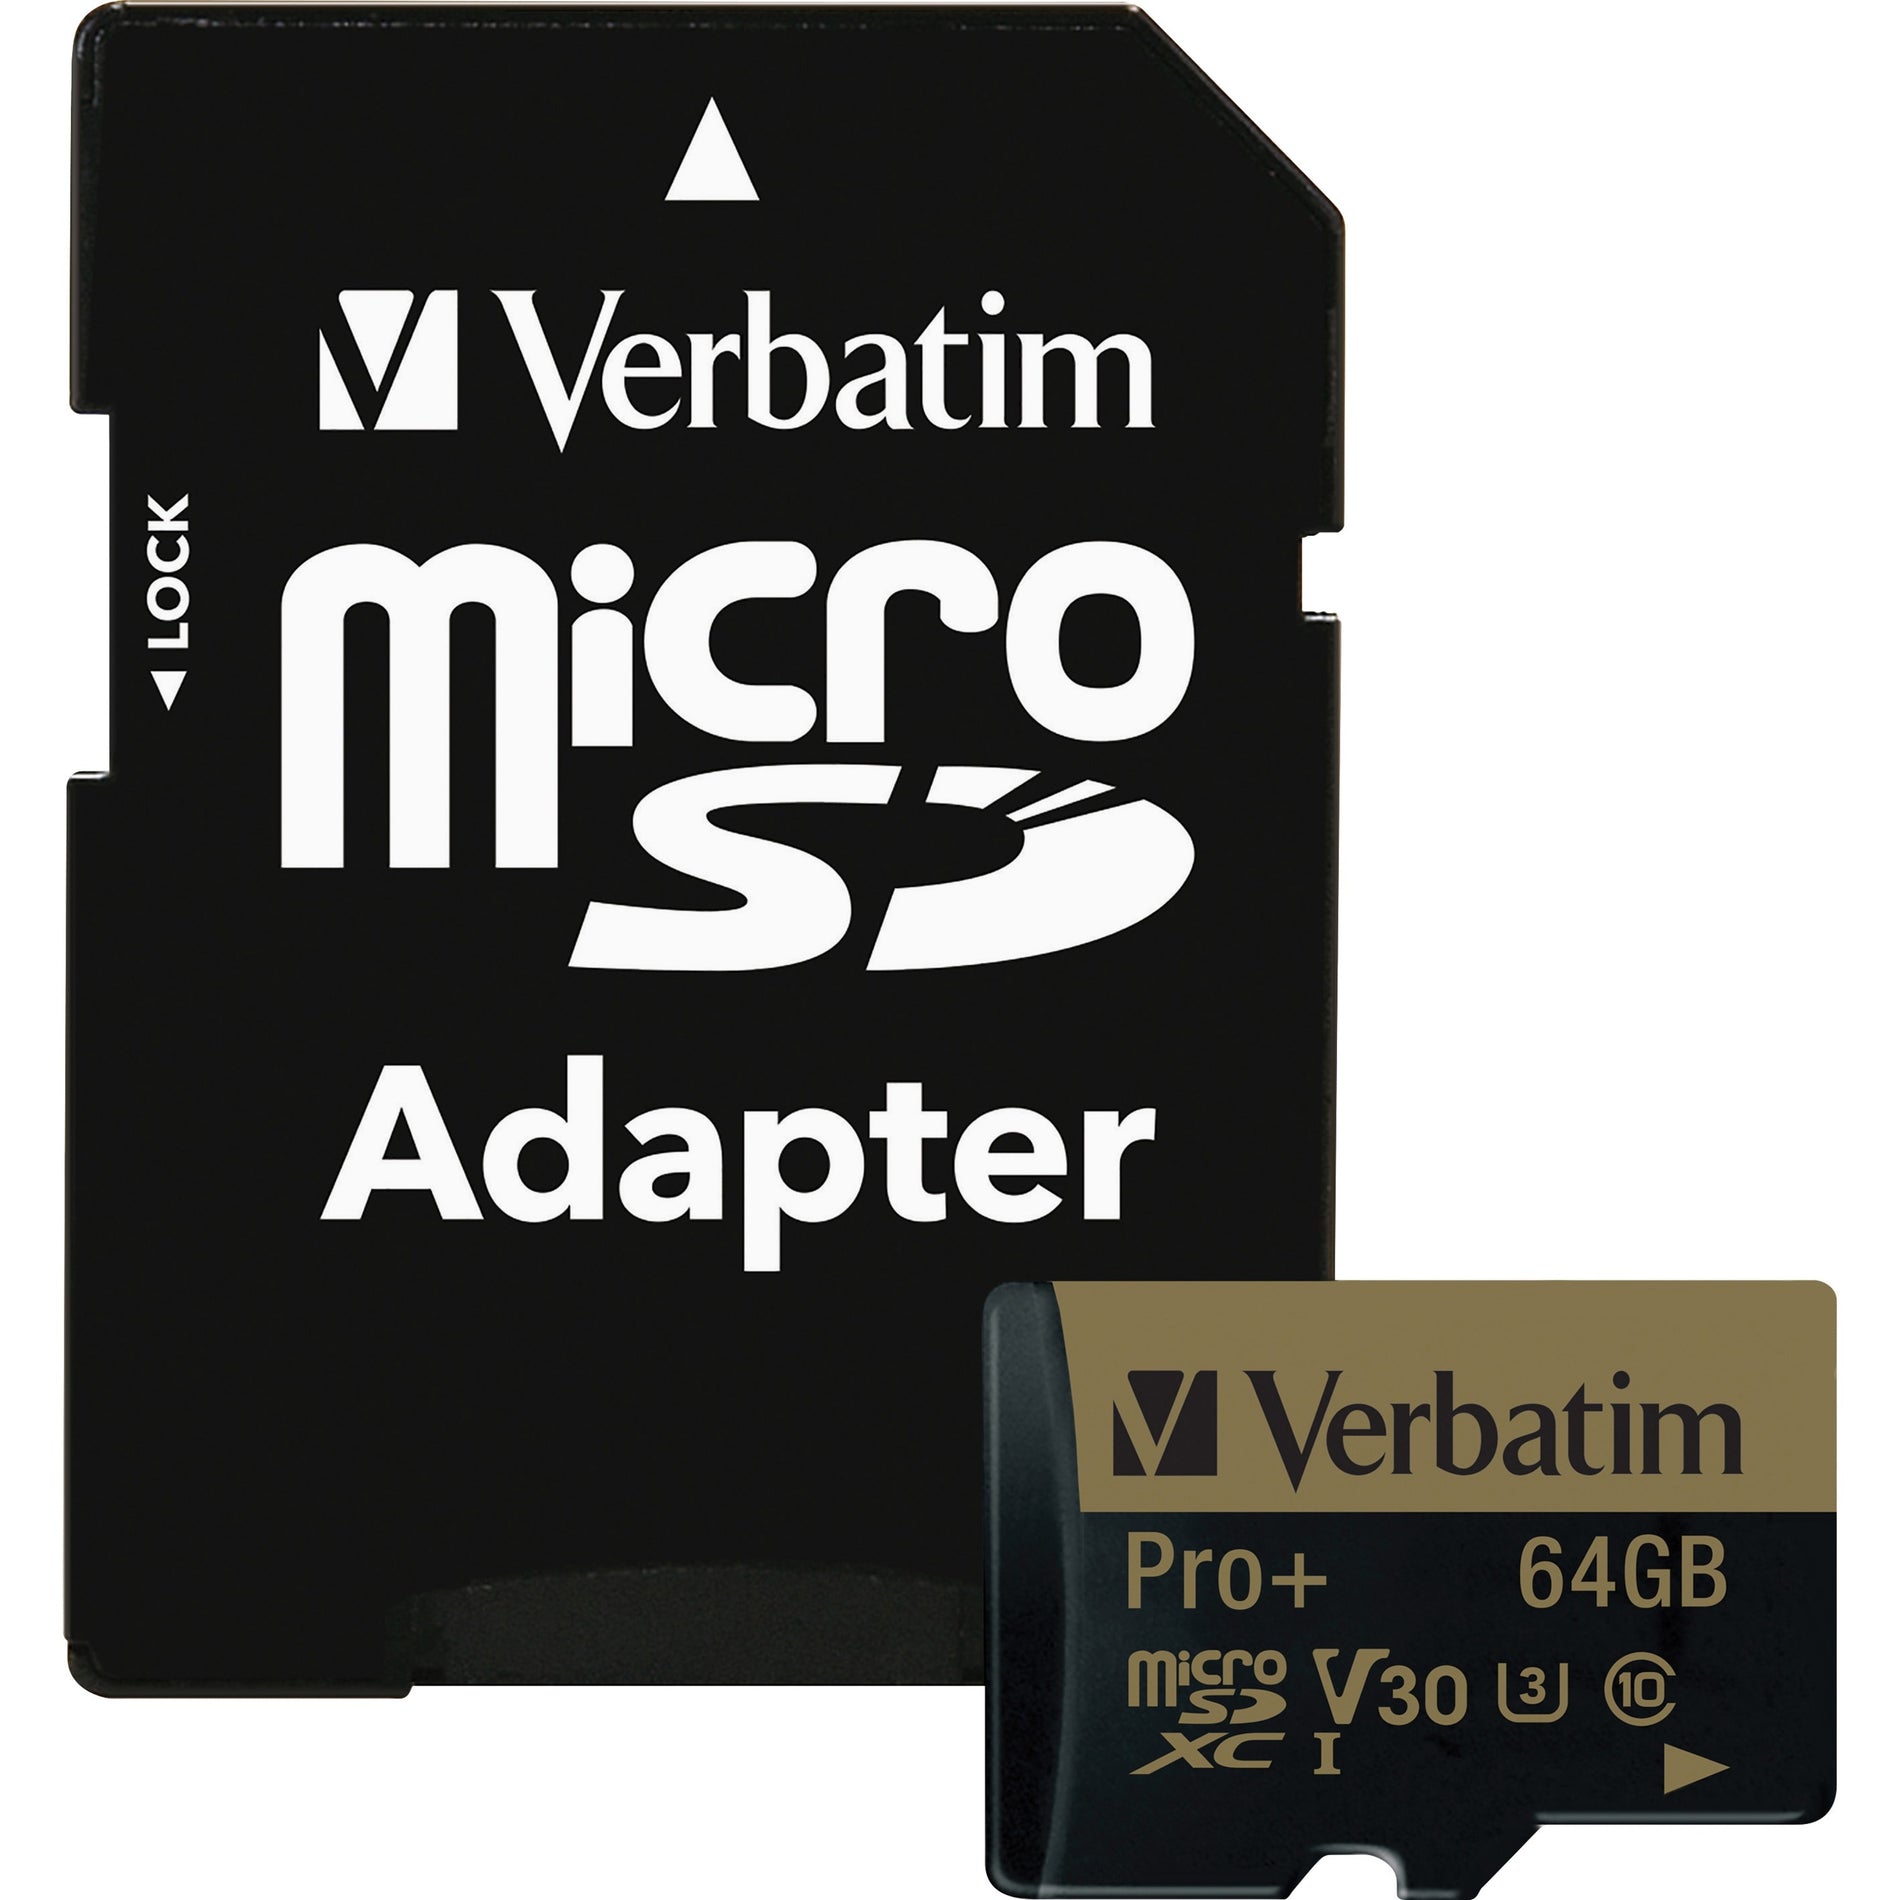 Verbatim 44034 Pro Plus microSDXC Memory Card, 64GB, Class 10/UHS-I (U3), 90MB/s Read Speed